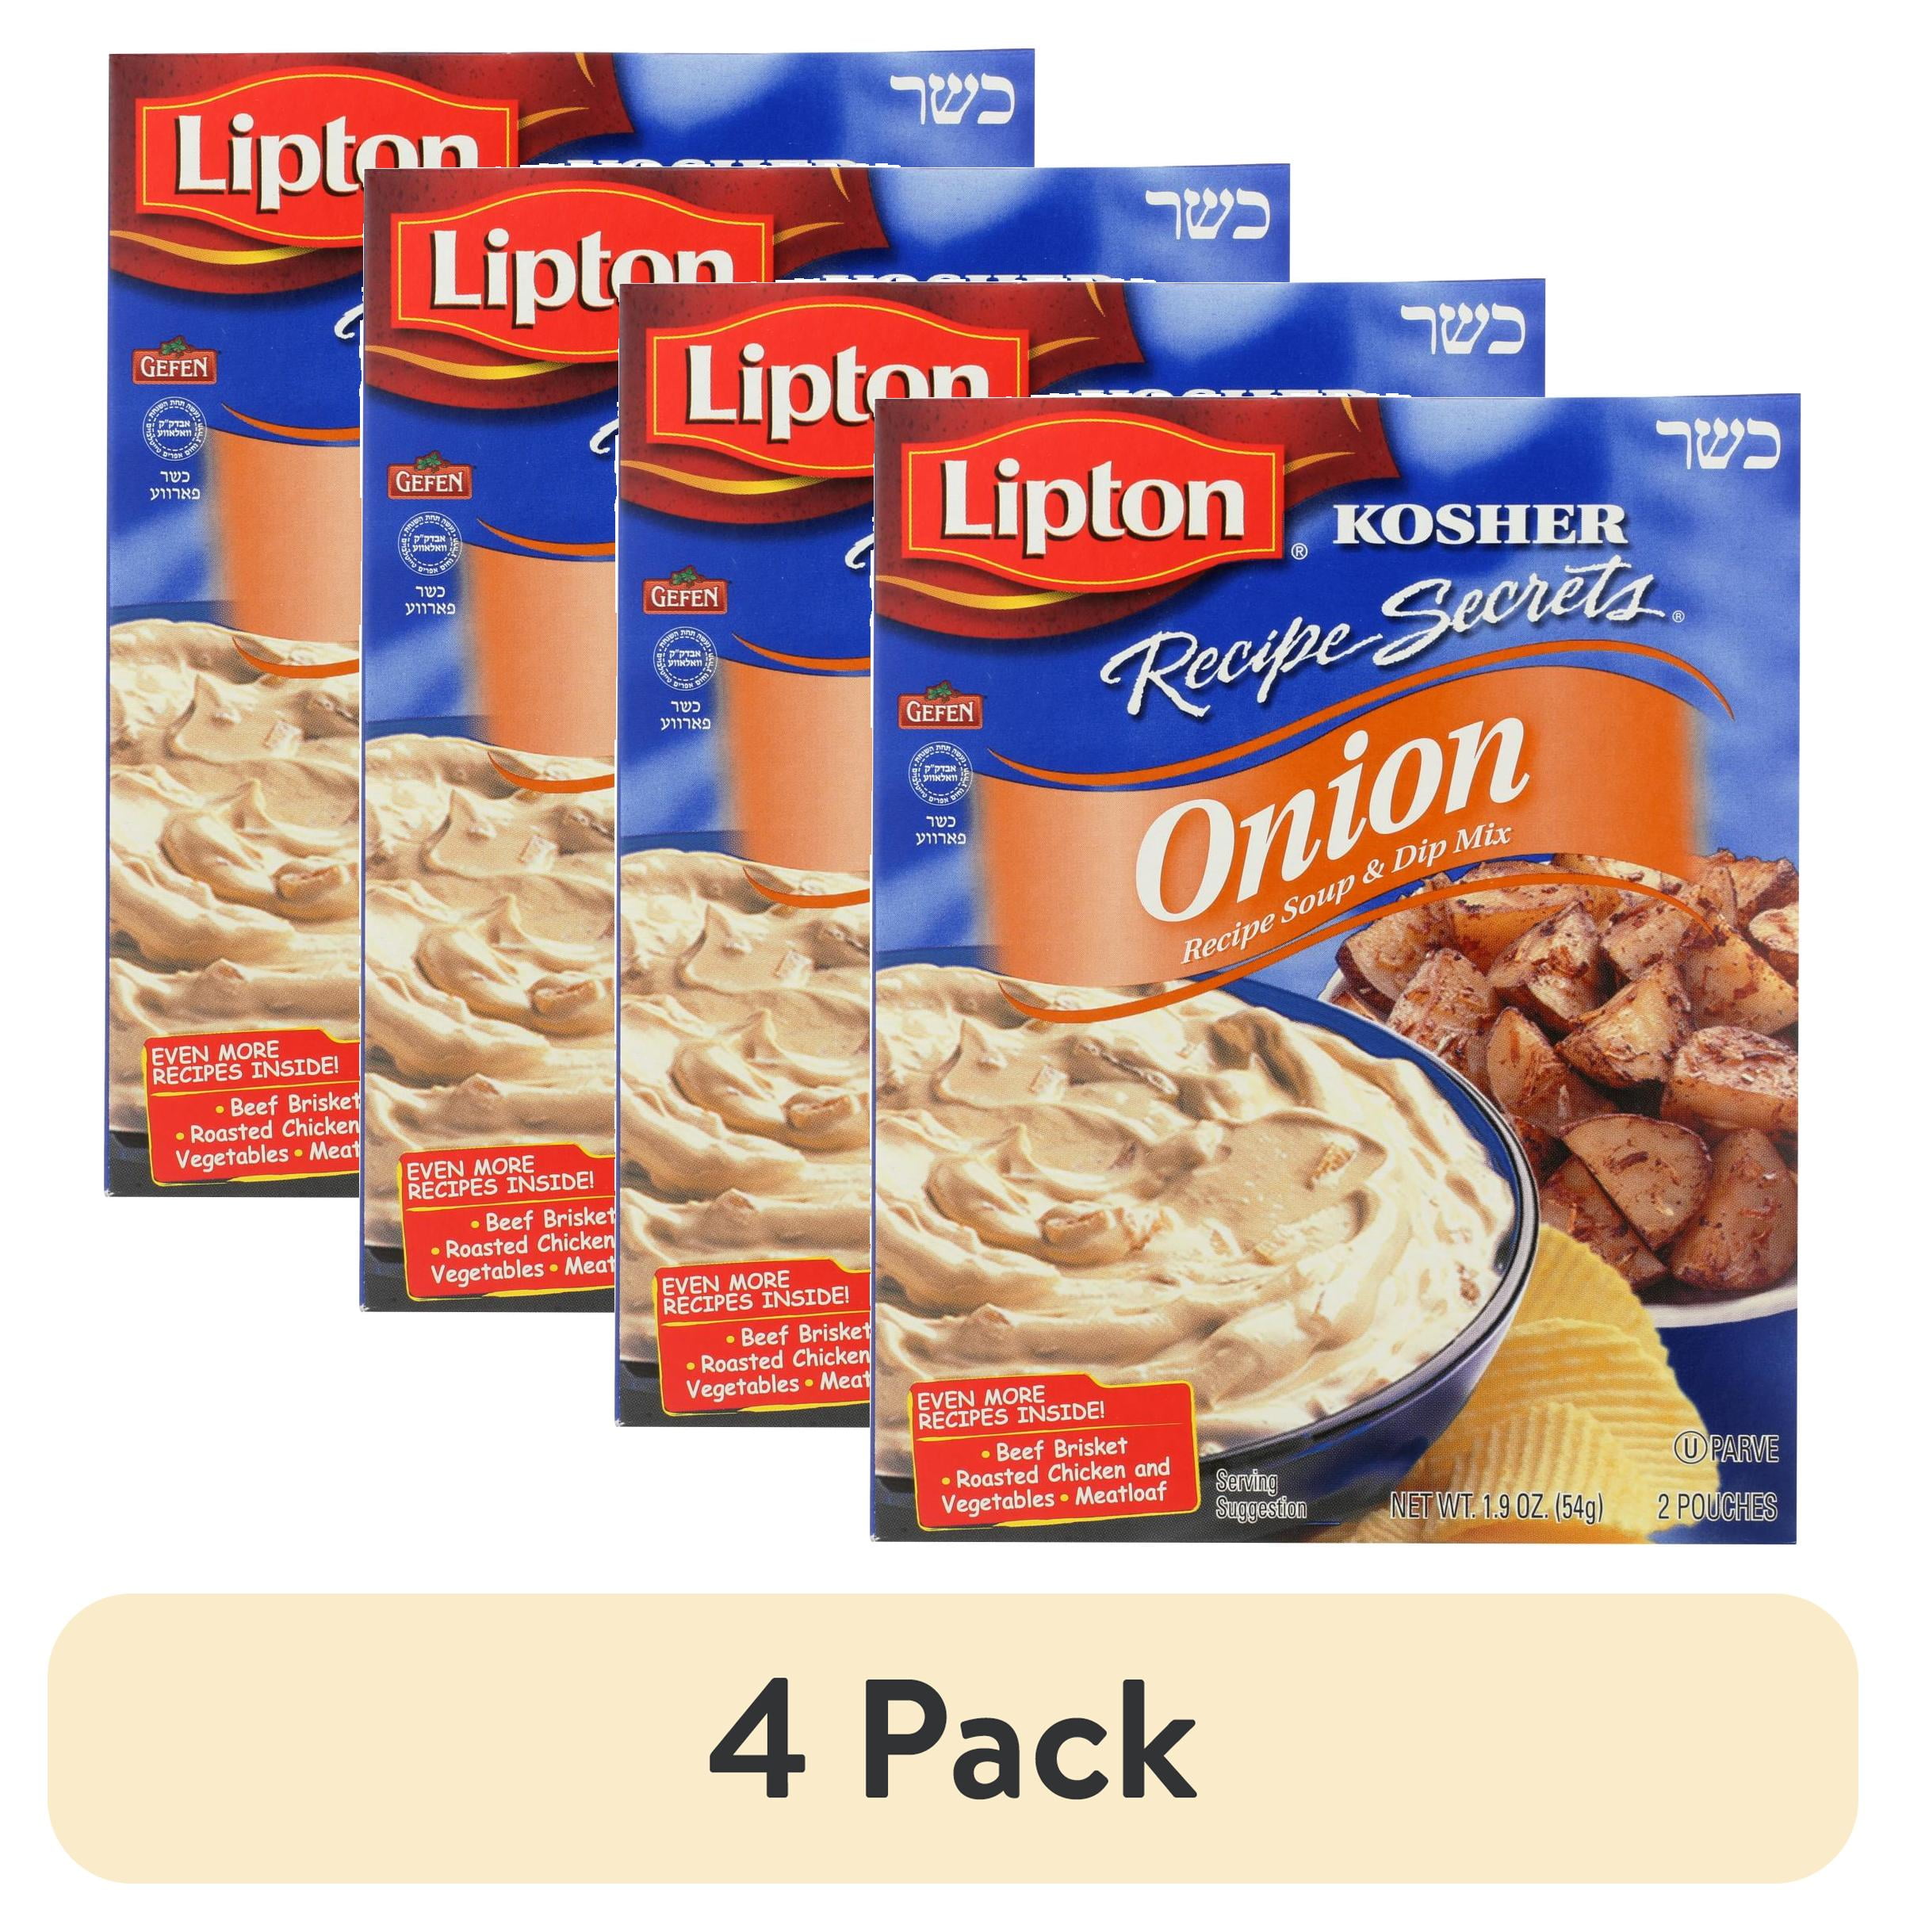 Lipton Onion Soup Mix Shipper - Kayco